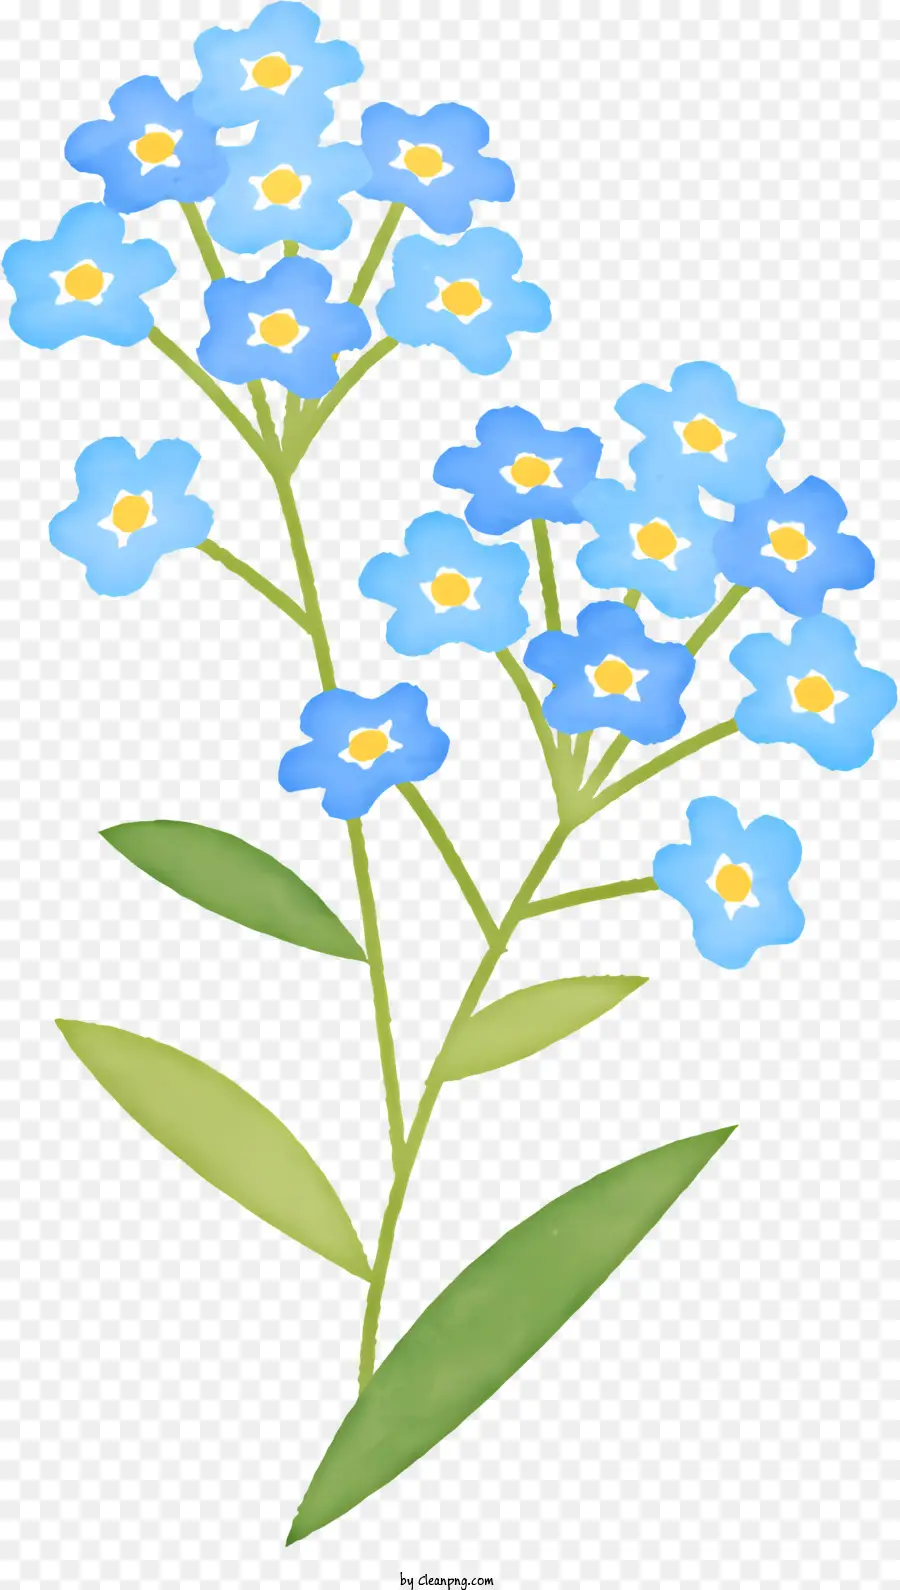 Blume weiße Blütenblätter blaue Blütenblätter grüner Stiele schwimmende Blume - Schwebende weiße und blaue Blume ohne Stiel